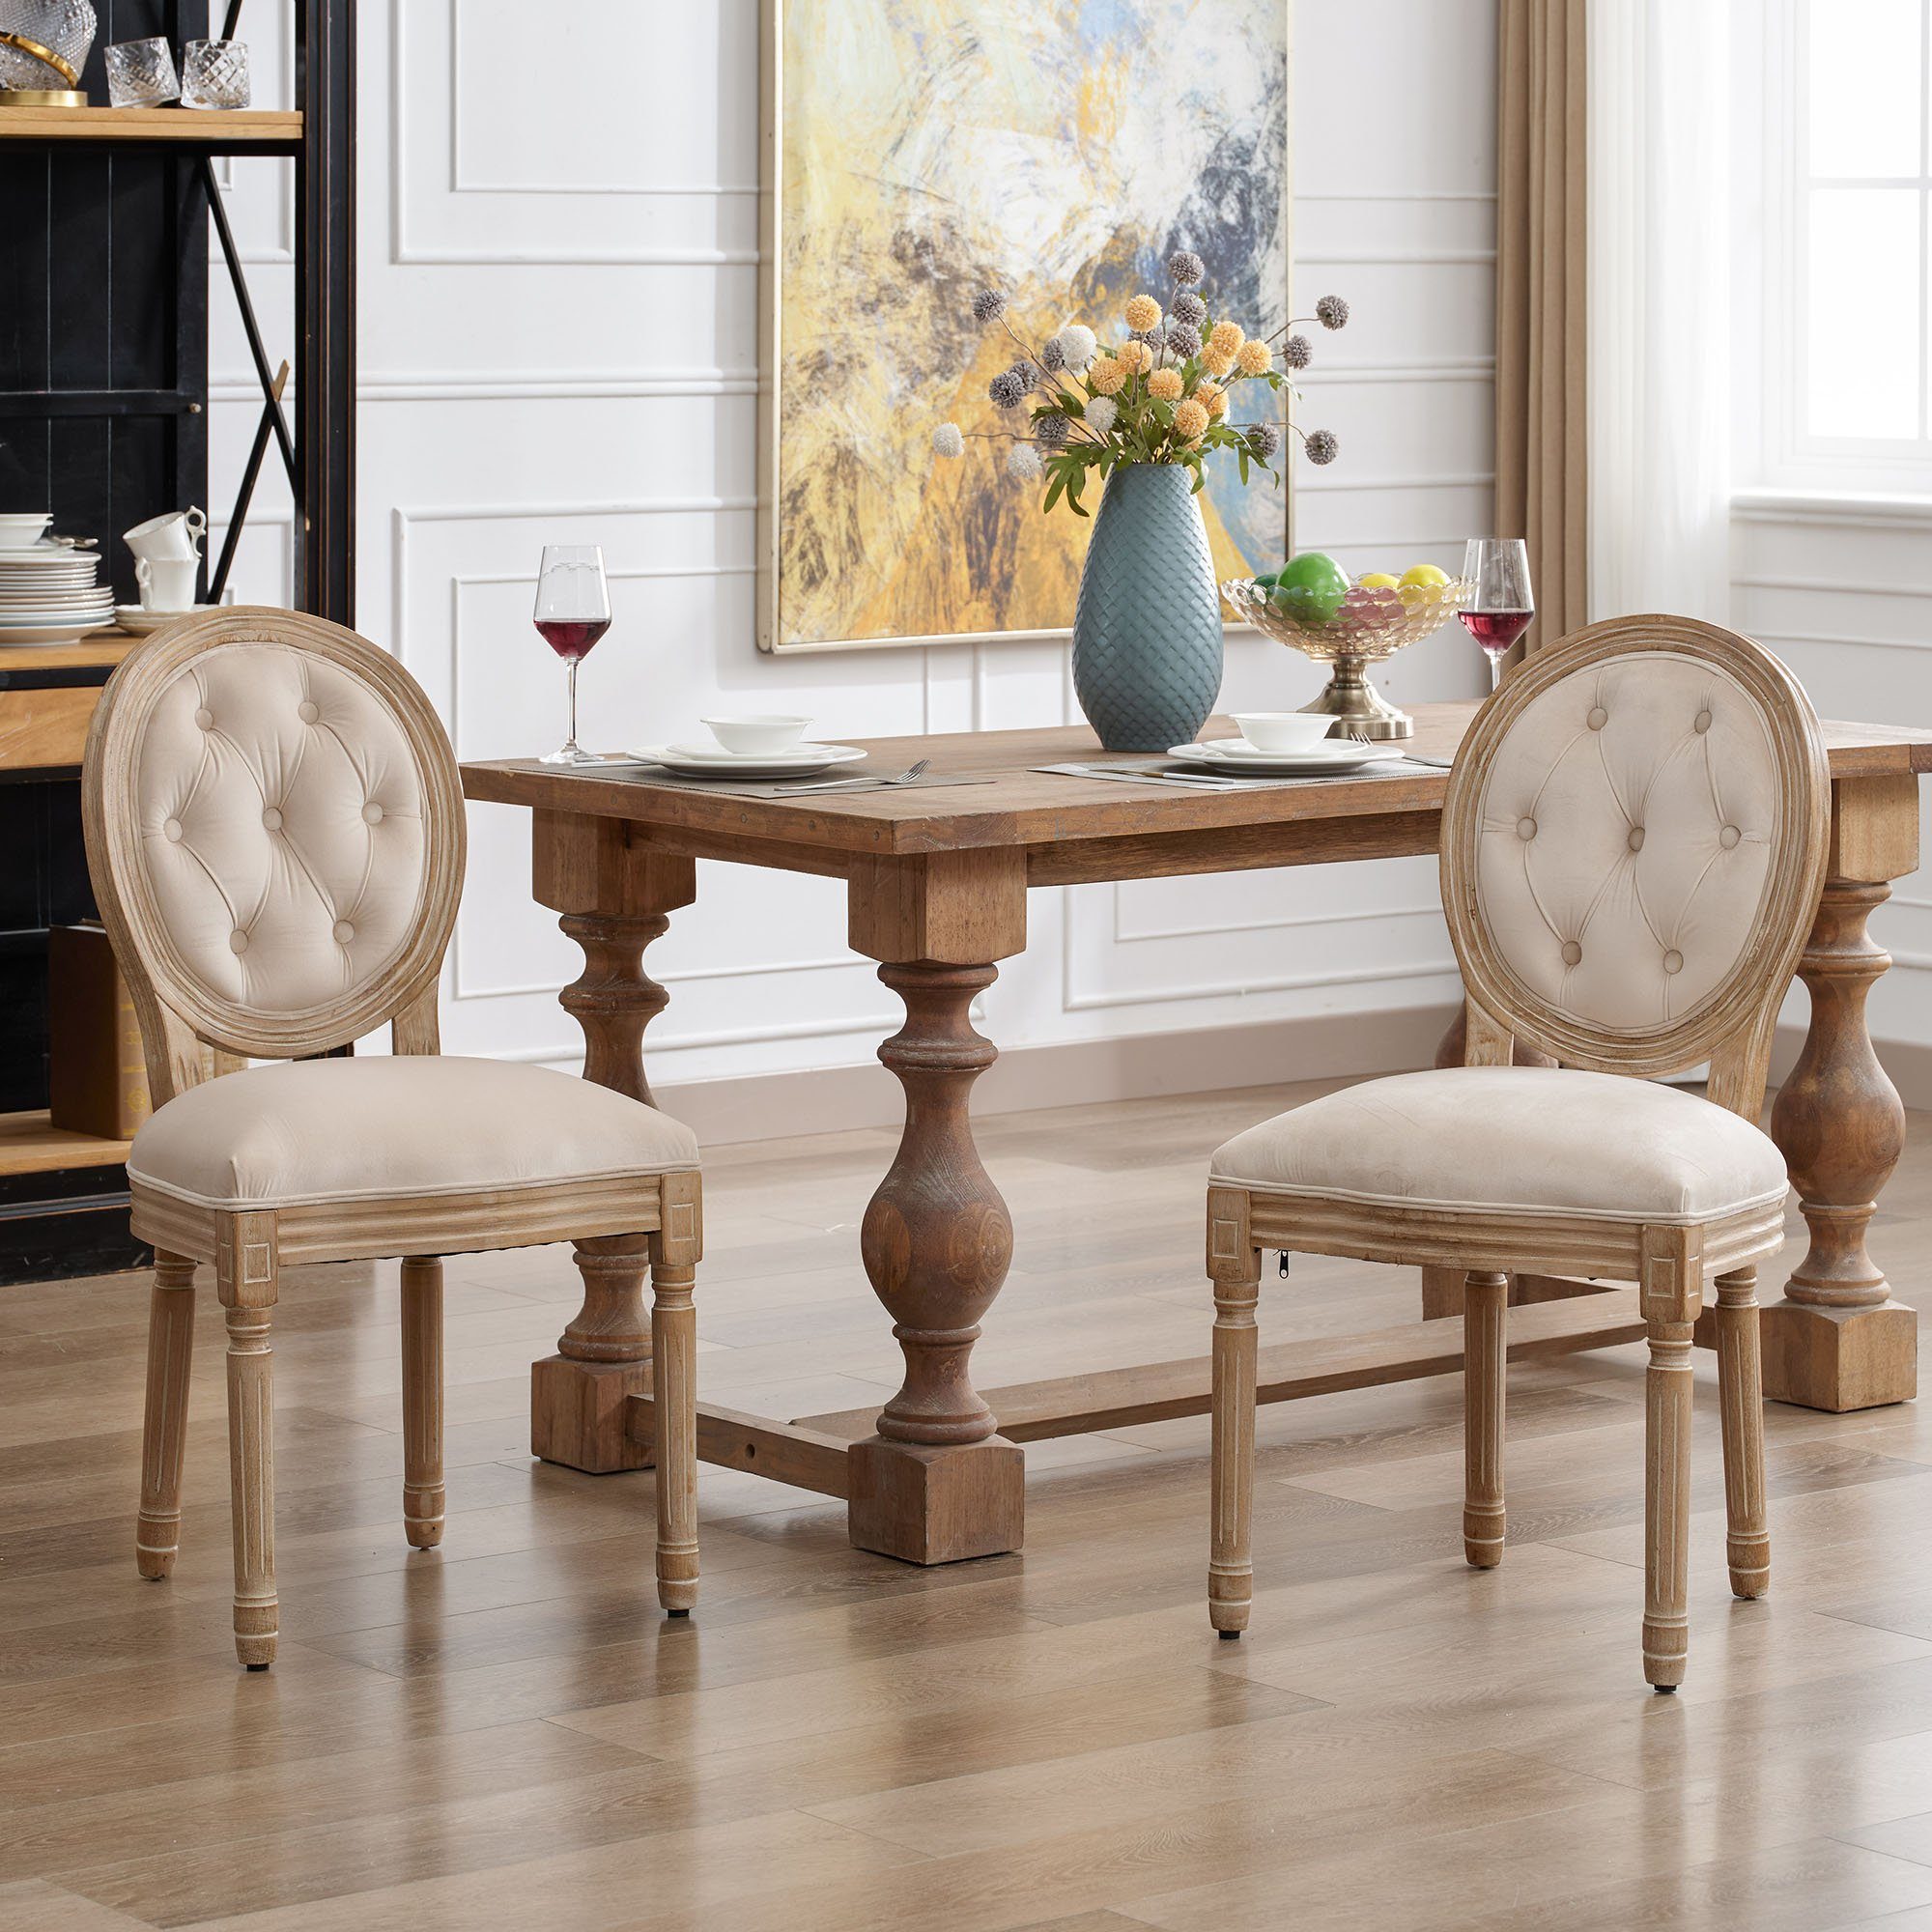 Ulife Polsterstuhl Esszimmerstühle aus Leinen,Knopfdesign Medaillon Stuhl (2 St), mit runden Rückenlehnen und Beinen aus Gummiholz | Polsterstühle